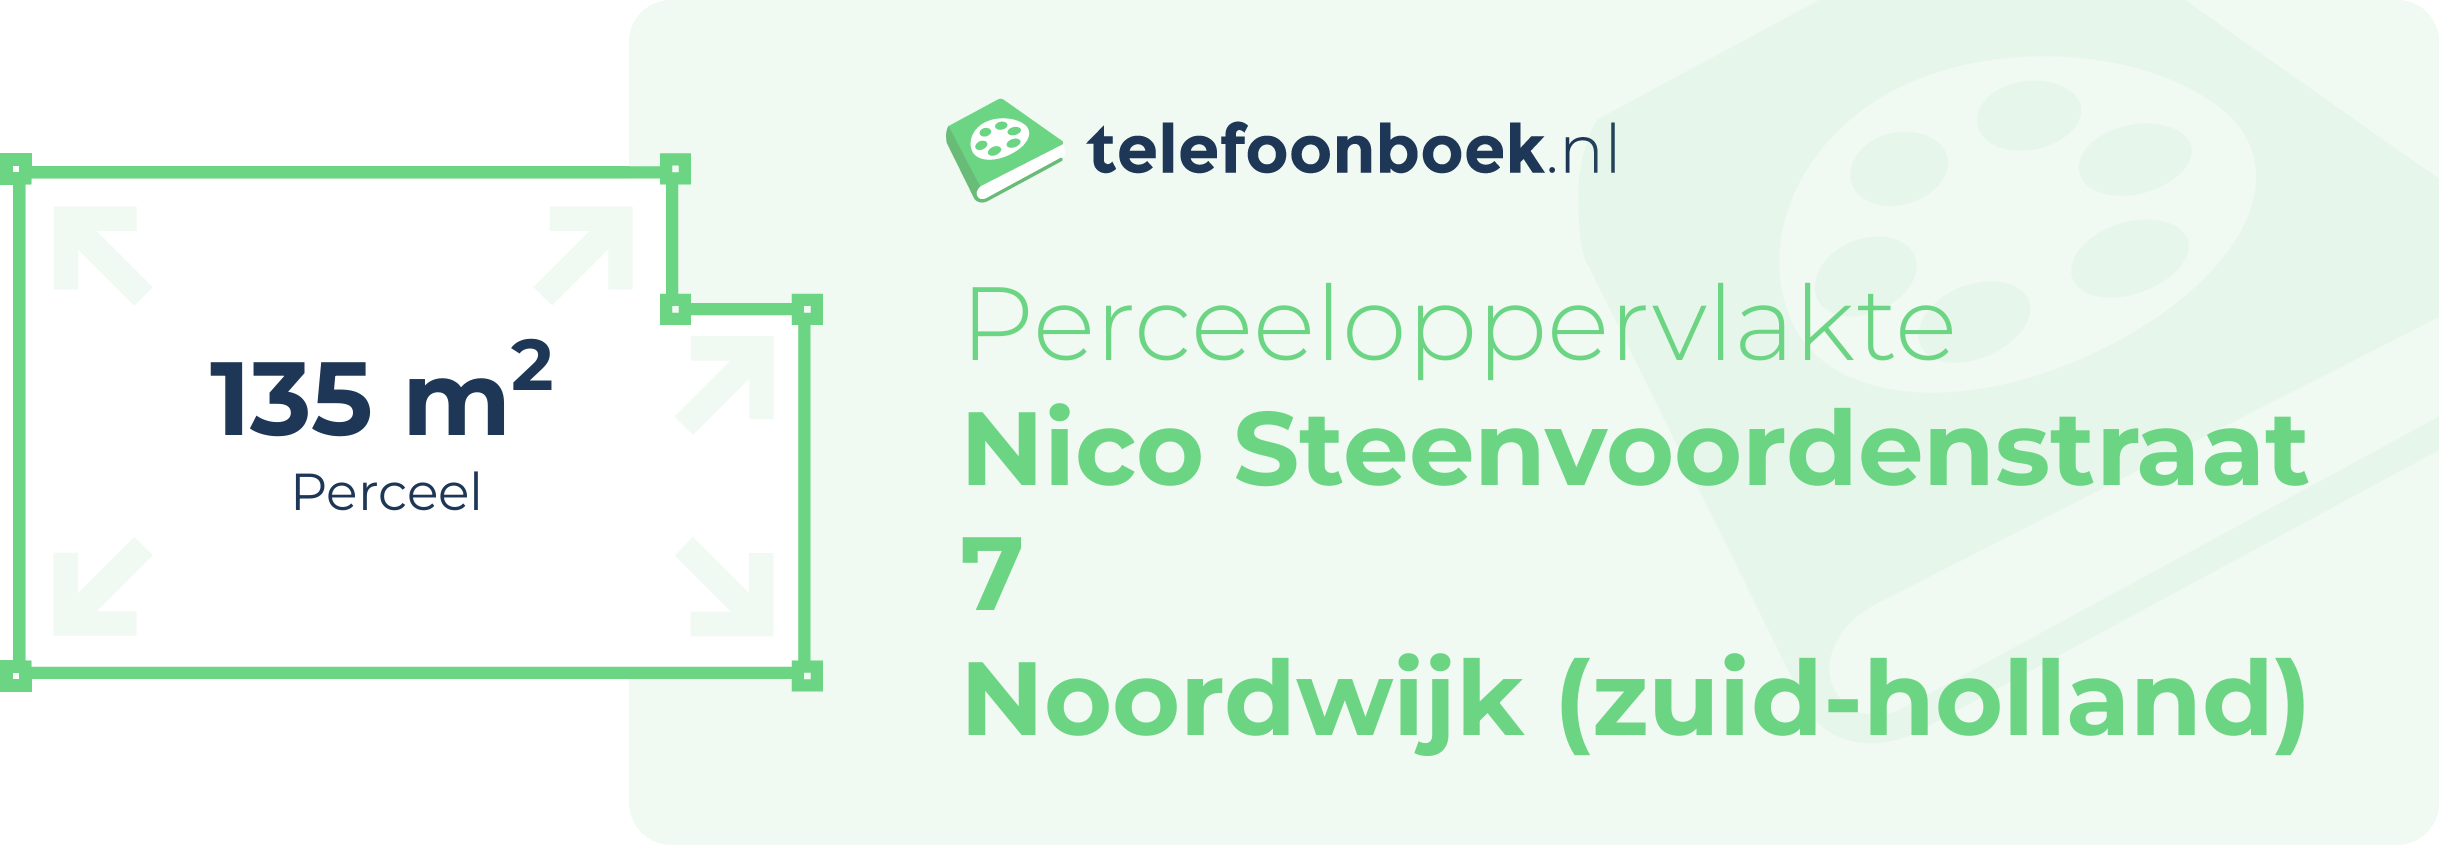 Perceeloppervlakte Nico Steenvoordenstraat 7 Noordwijk (Zuid-Holland)